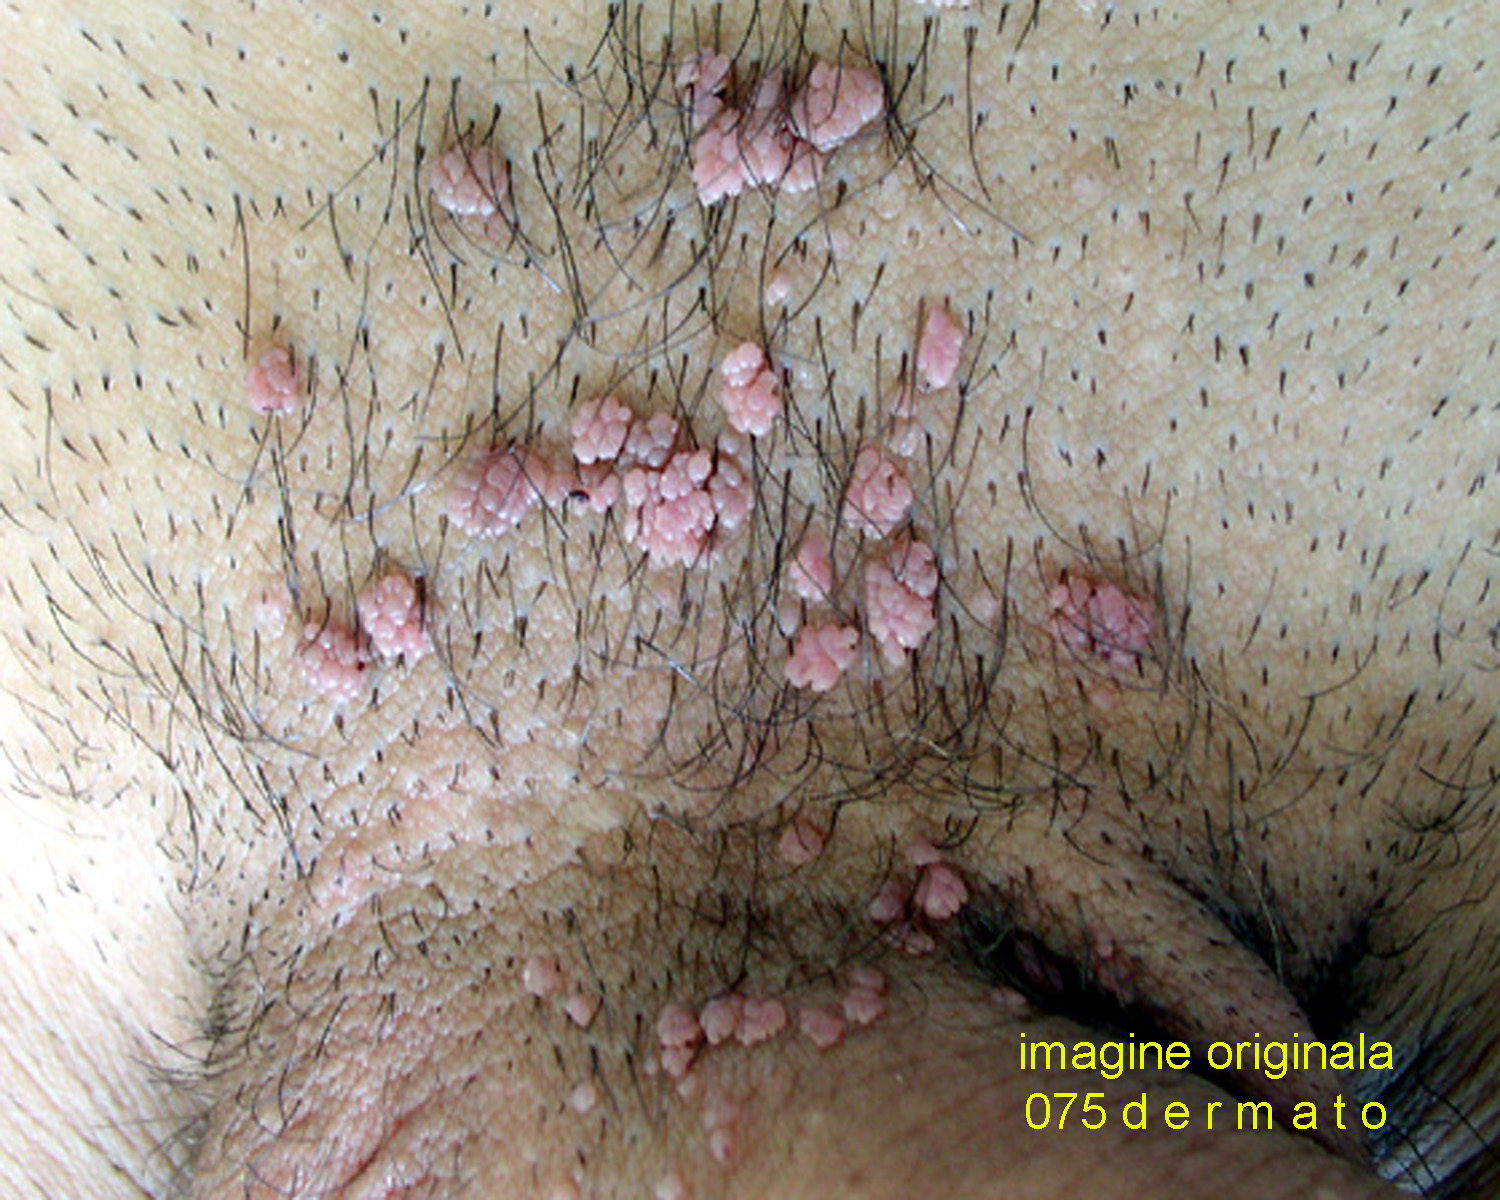 Simptome ale verucilor genitale în rect, CE SUNT VERUCILE GENITALE (negi genitali, condiloame)?